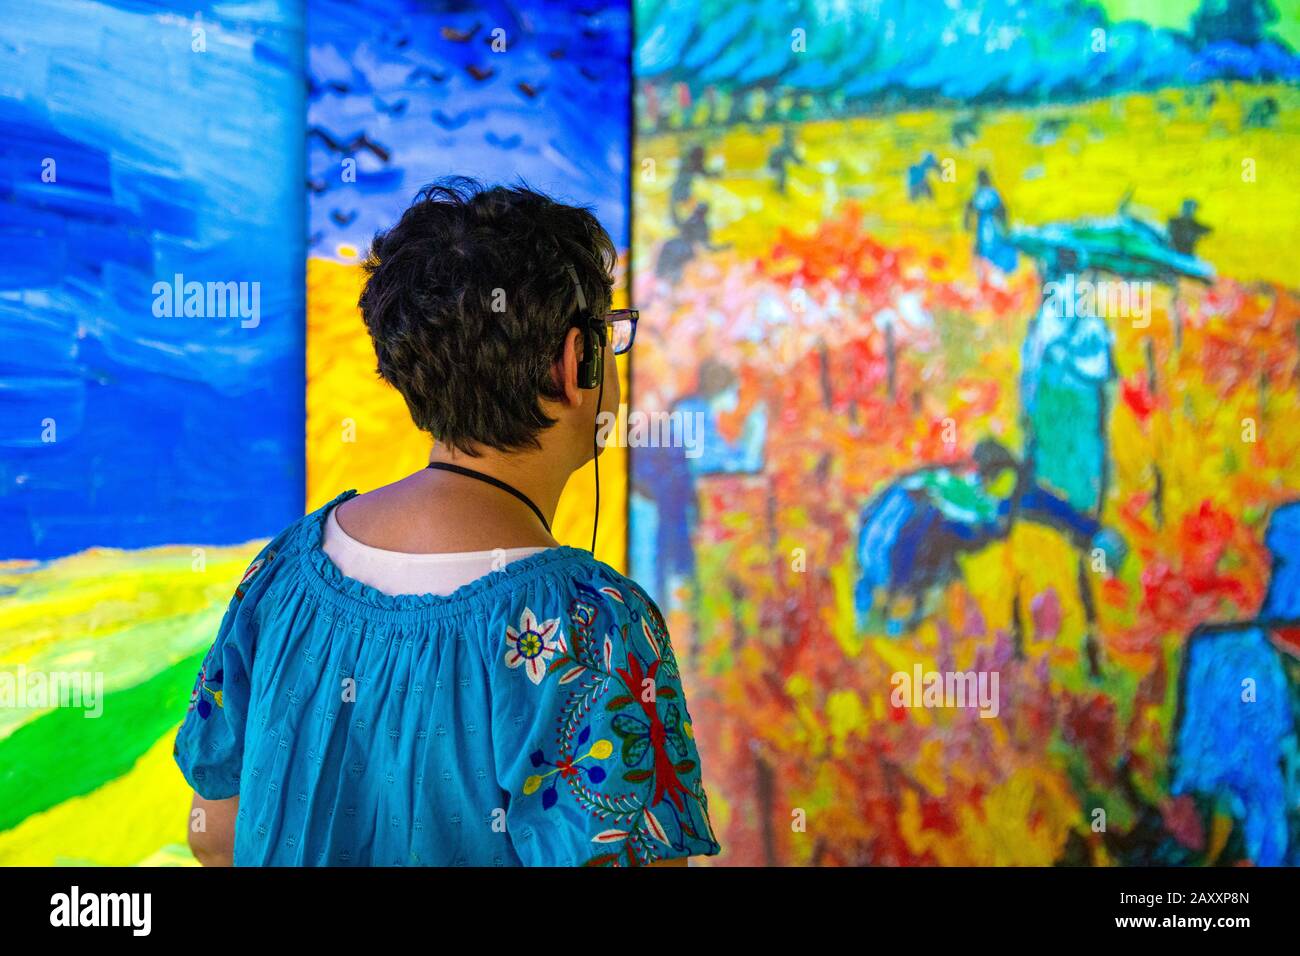 Frau mit Kopfhörern zum hören von Audioguide und Blick auf Gemälde, die auf Wände projiziert werden, Trifft Vincent van Gogh Experience 2020, London, Großbritannien Stockfoto